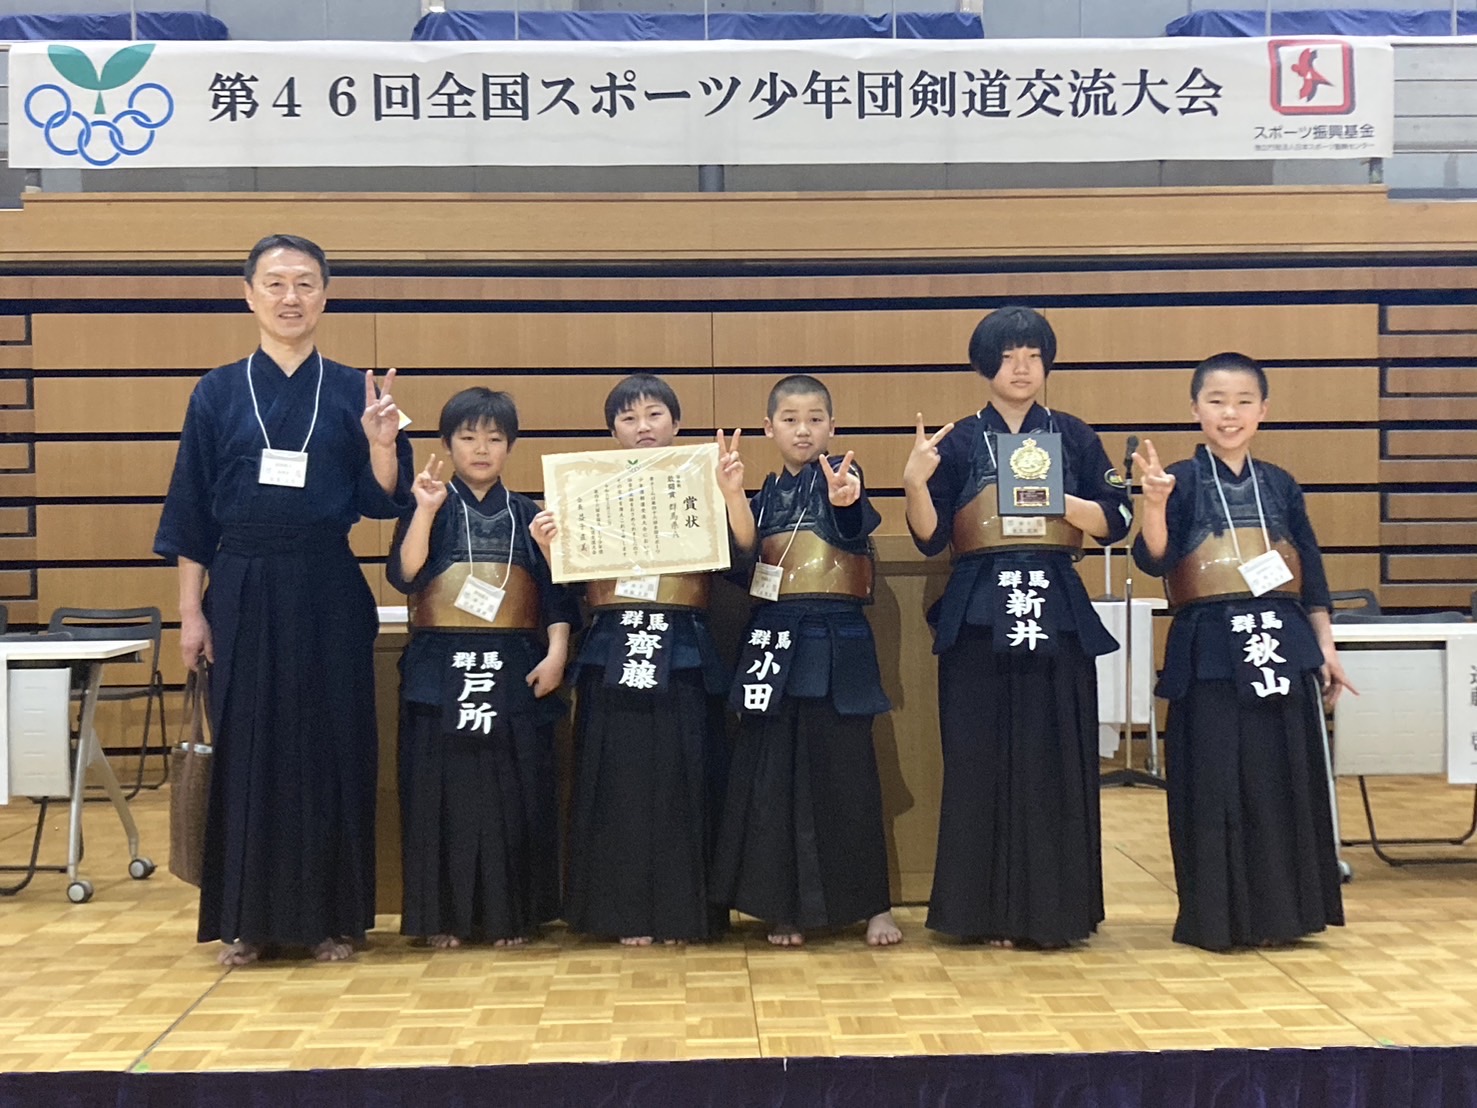 第46回全国スポーツ少年団剣道交流大会